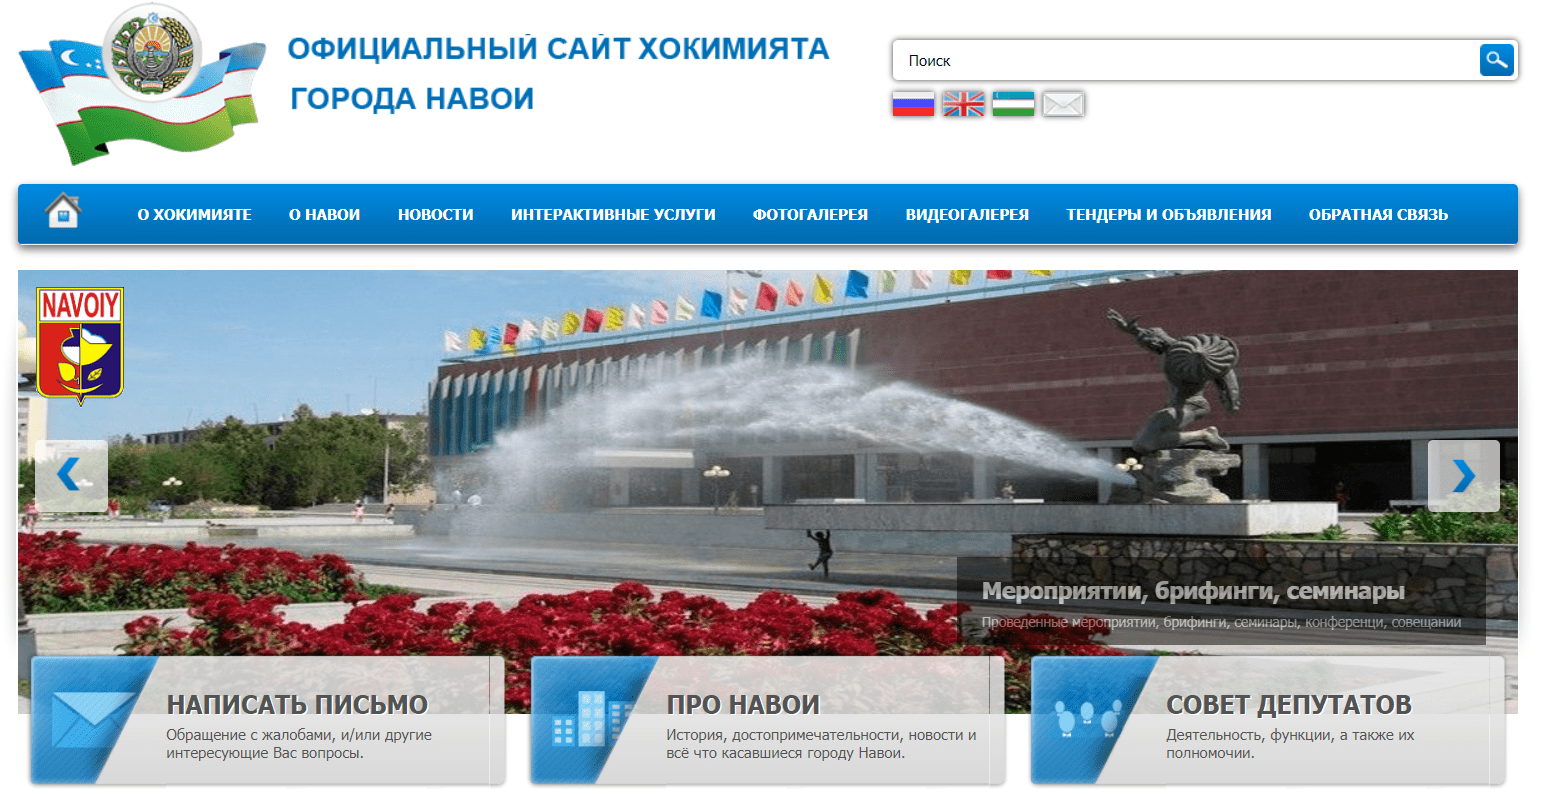 Хокимият города Навои (navoiy.uz) - официальный сайт